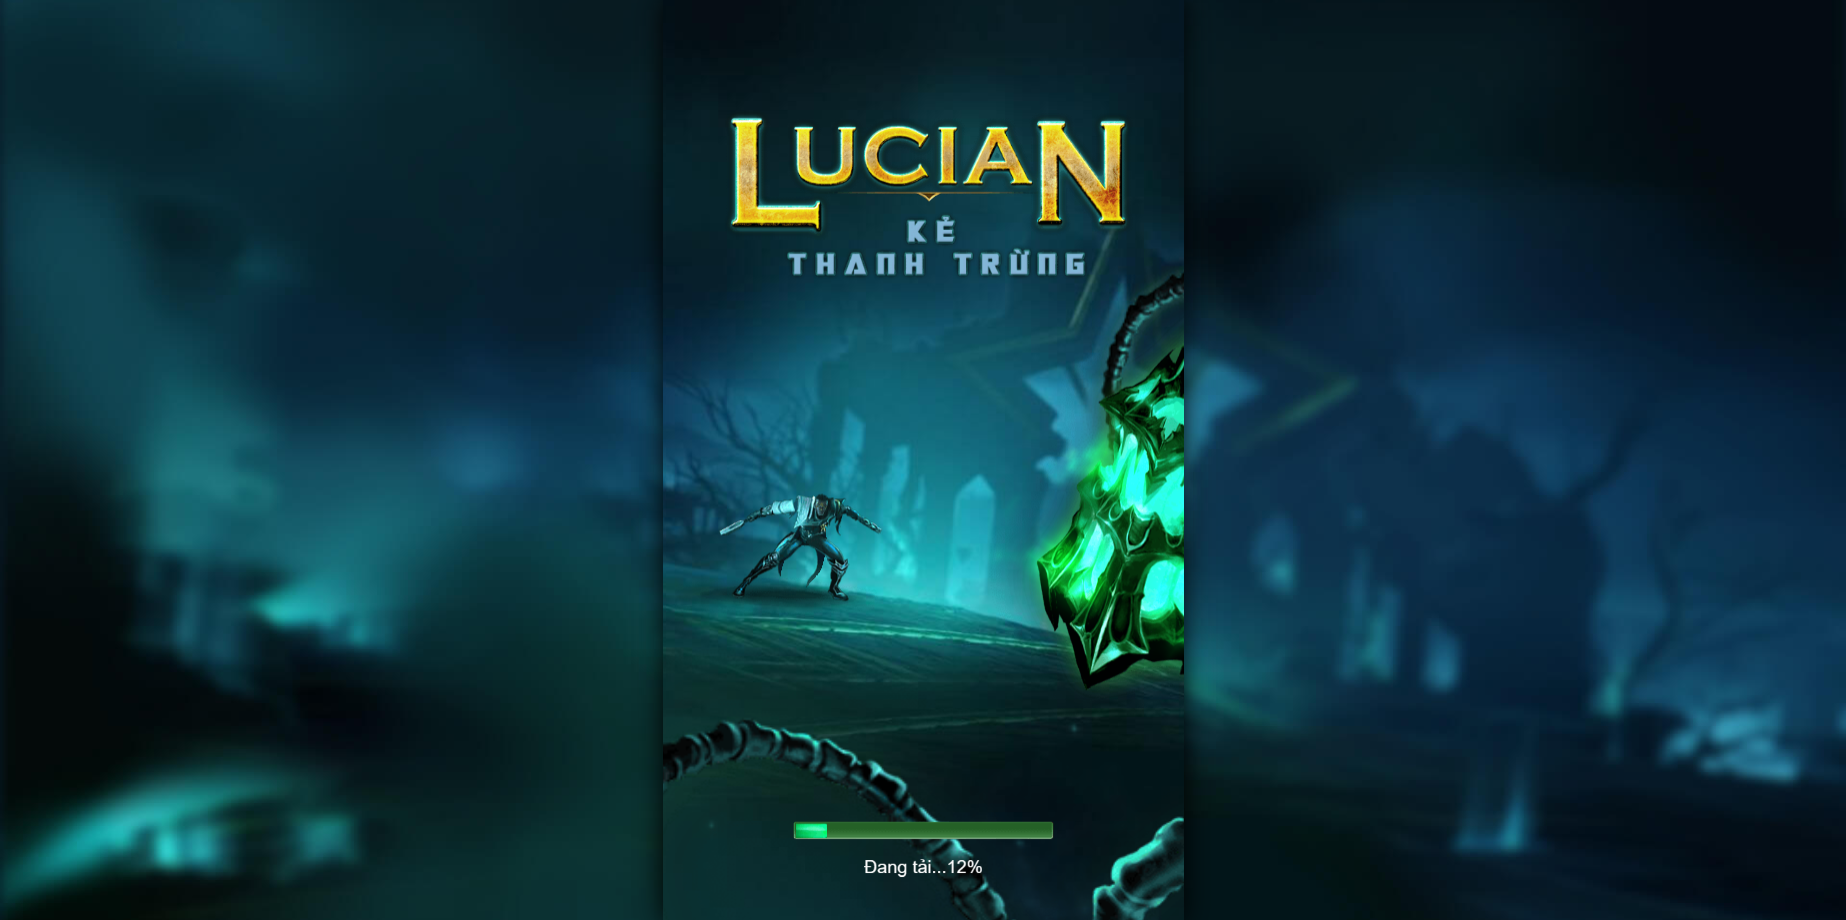 Lucian - Kẻ Thanh Trừng là game gì?